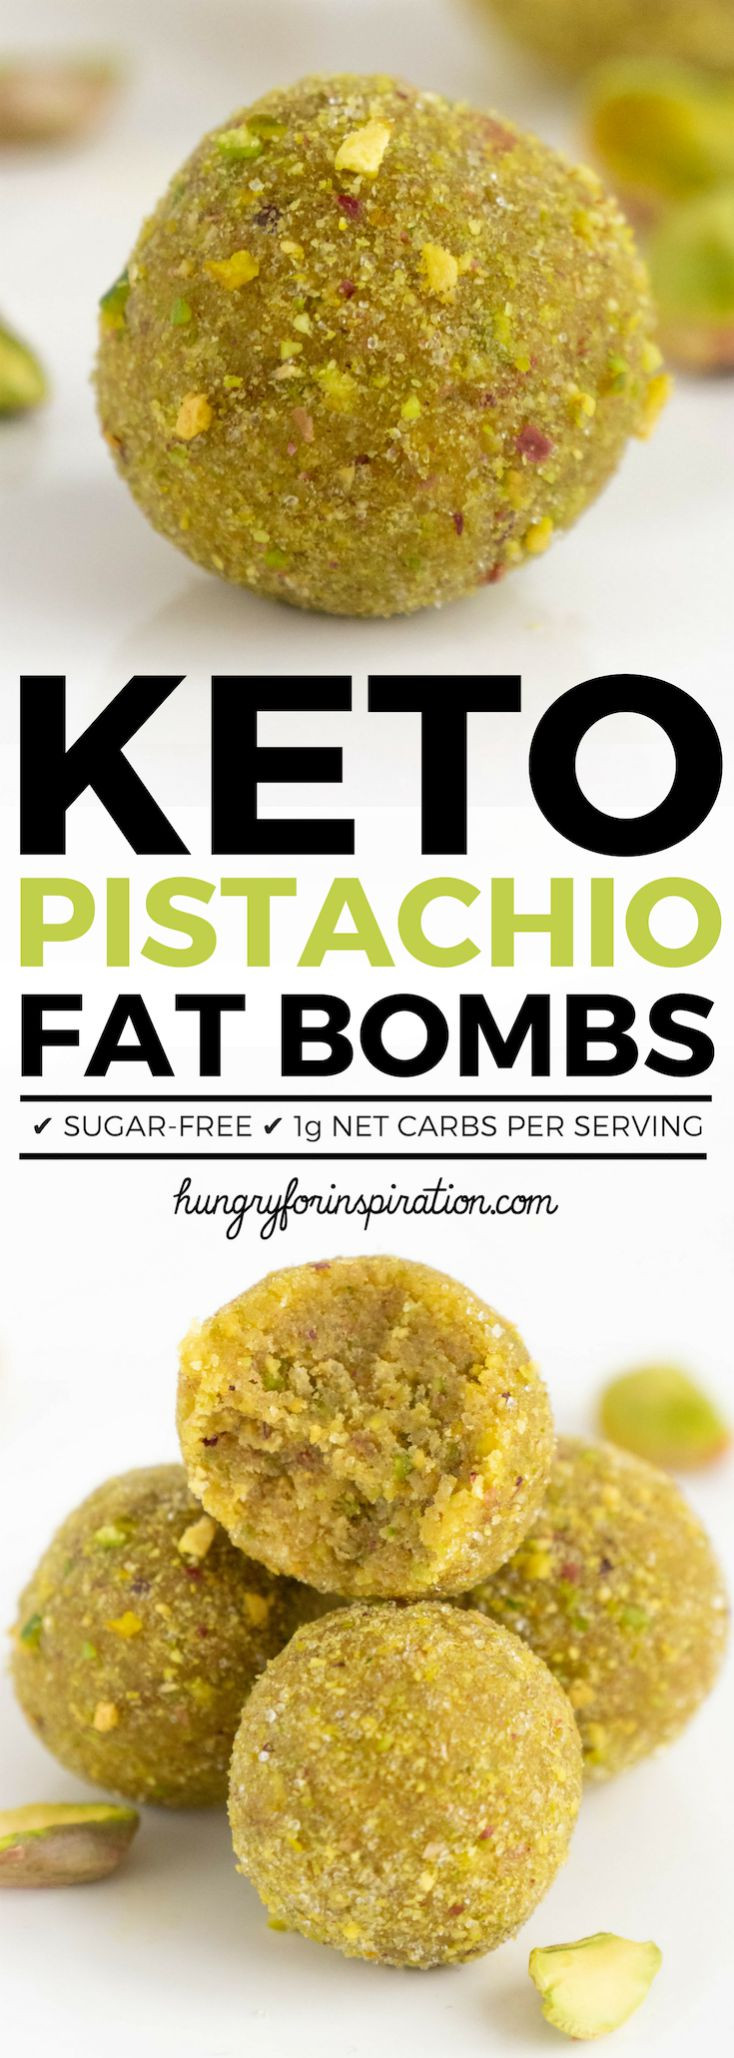 Healthy Keto Fat Bombs
 Healthy 5 Minute Pistachio Keto Fat Bombs Easy Keto Snack